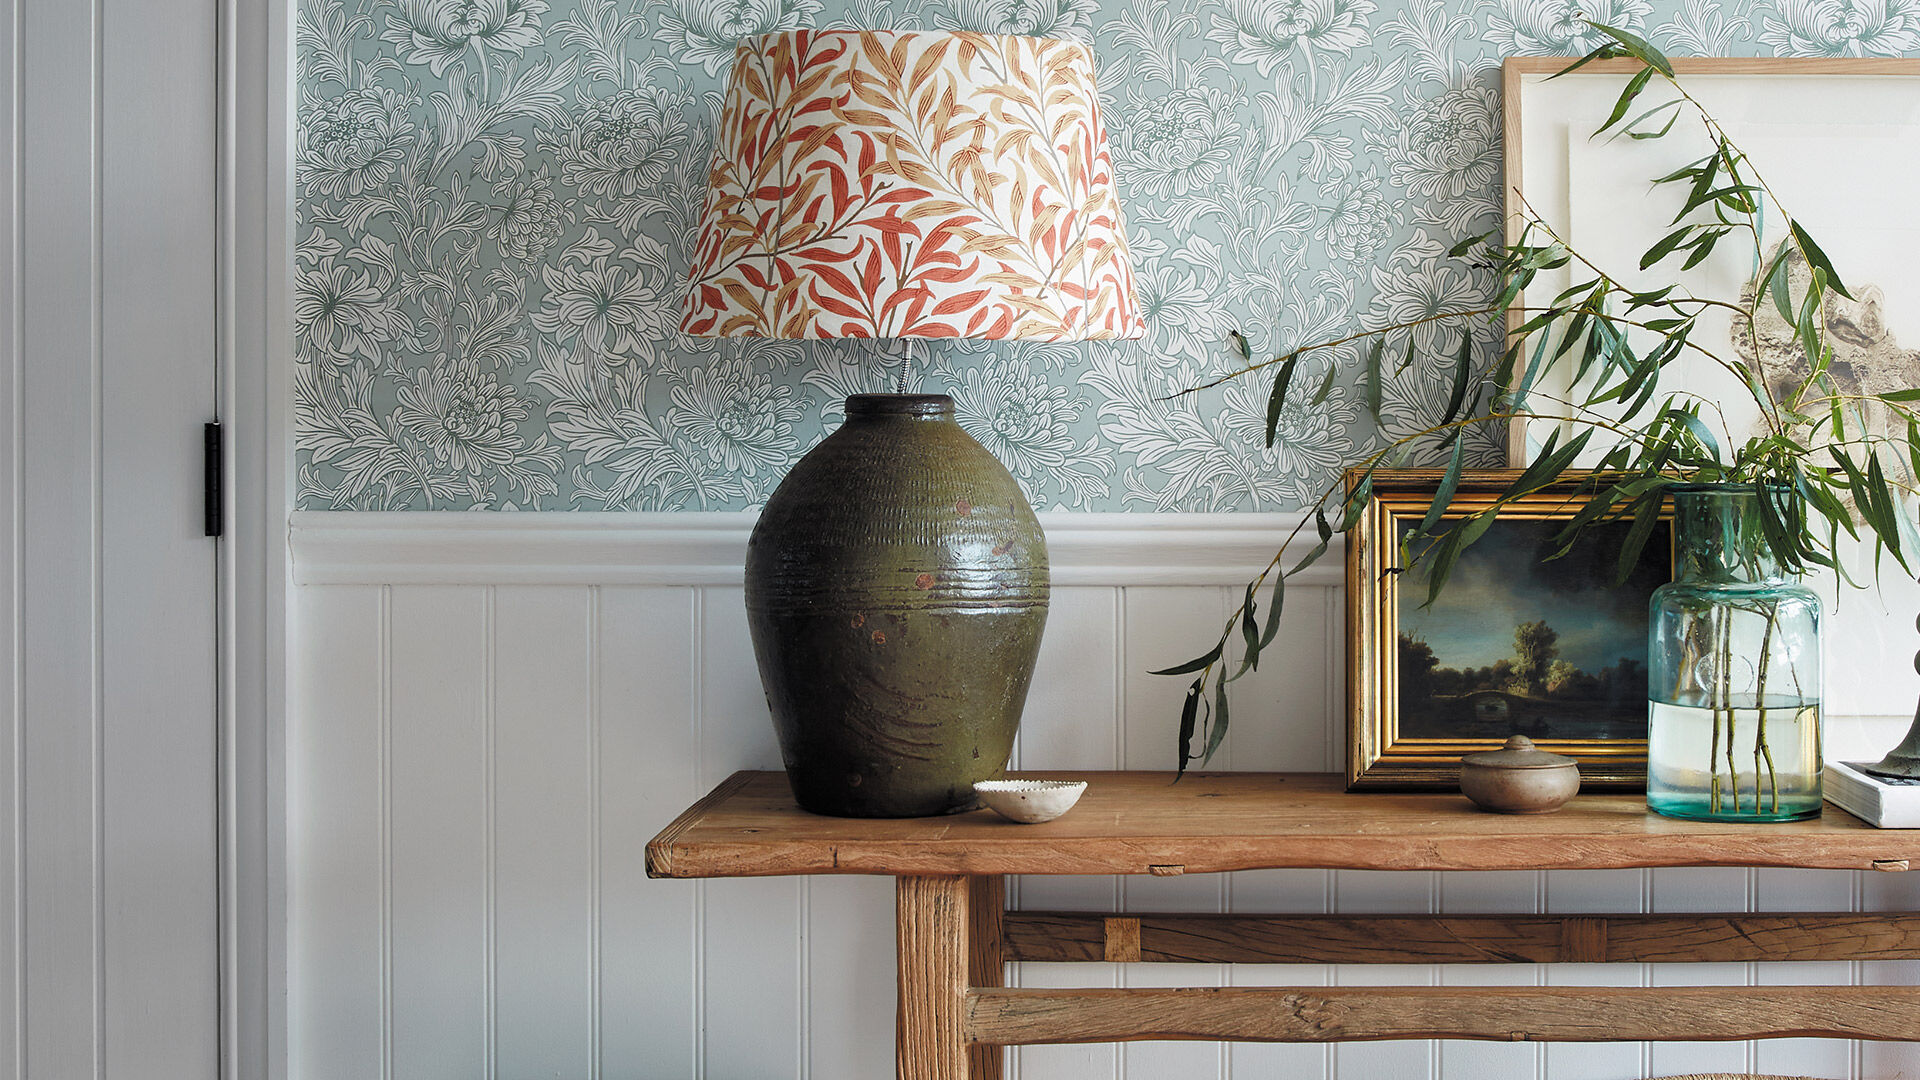 Stuckpaneele und Wandleisten passend zu einer floralen Tapete für einen Flur in Landhausoptik.